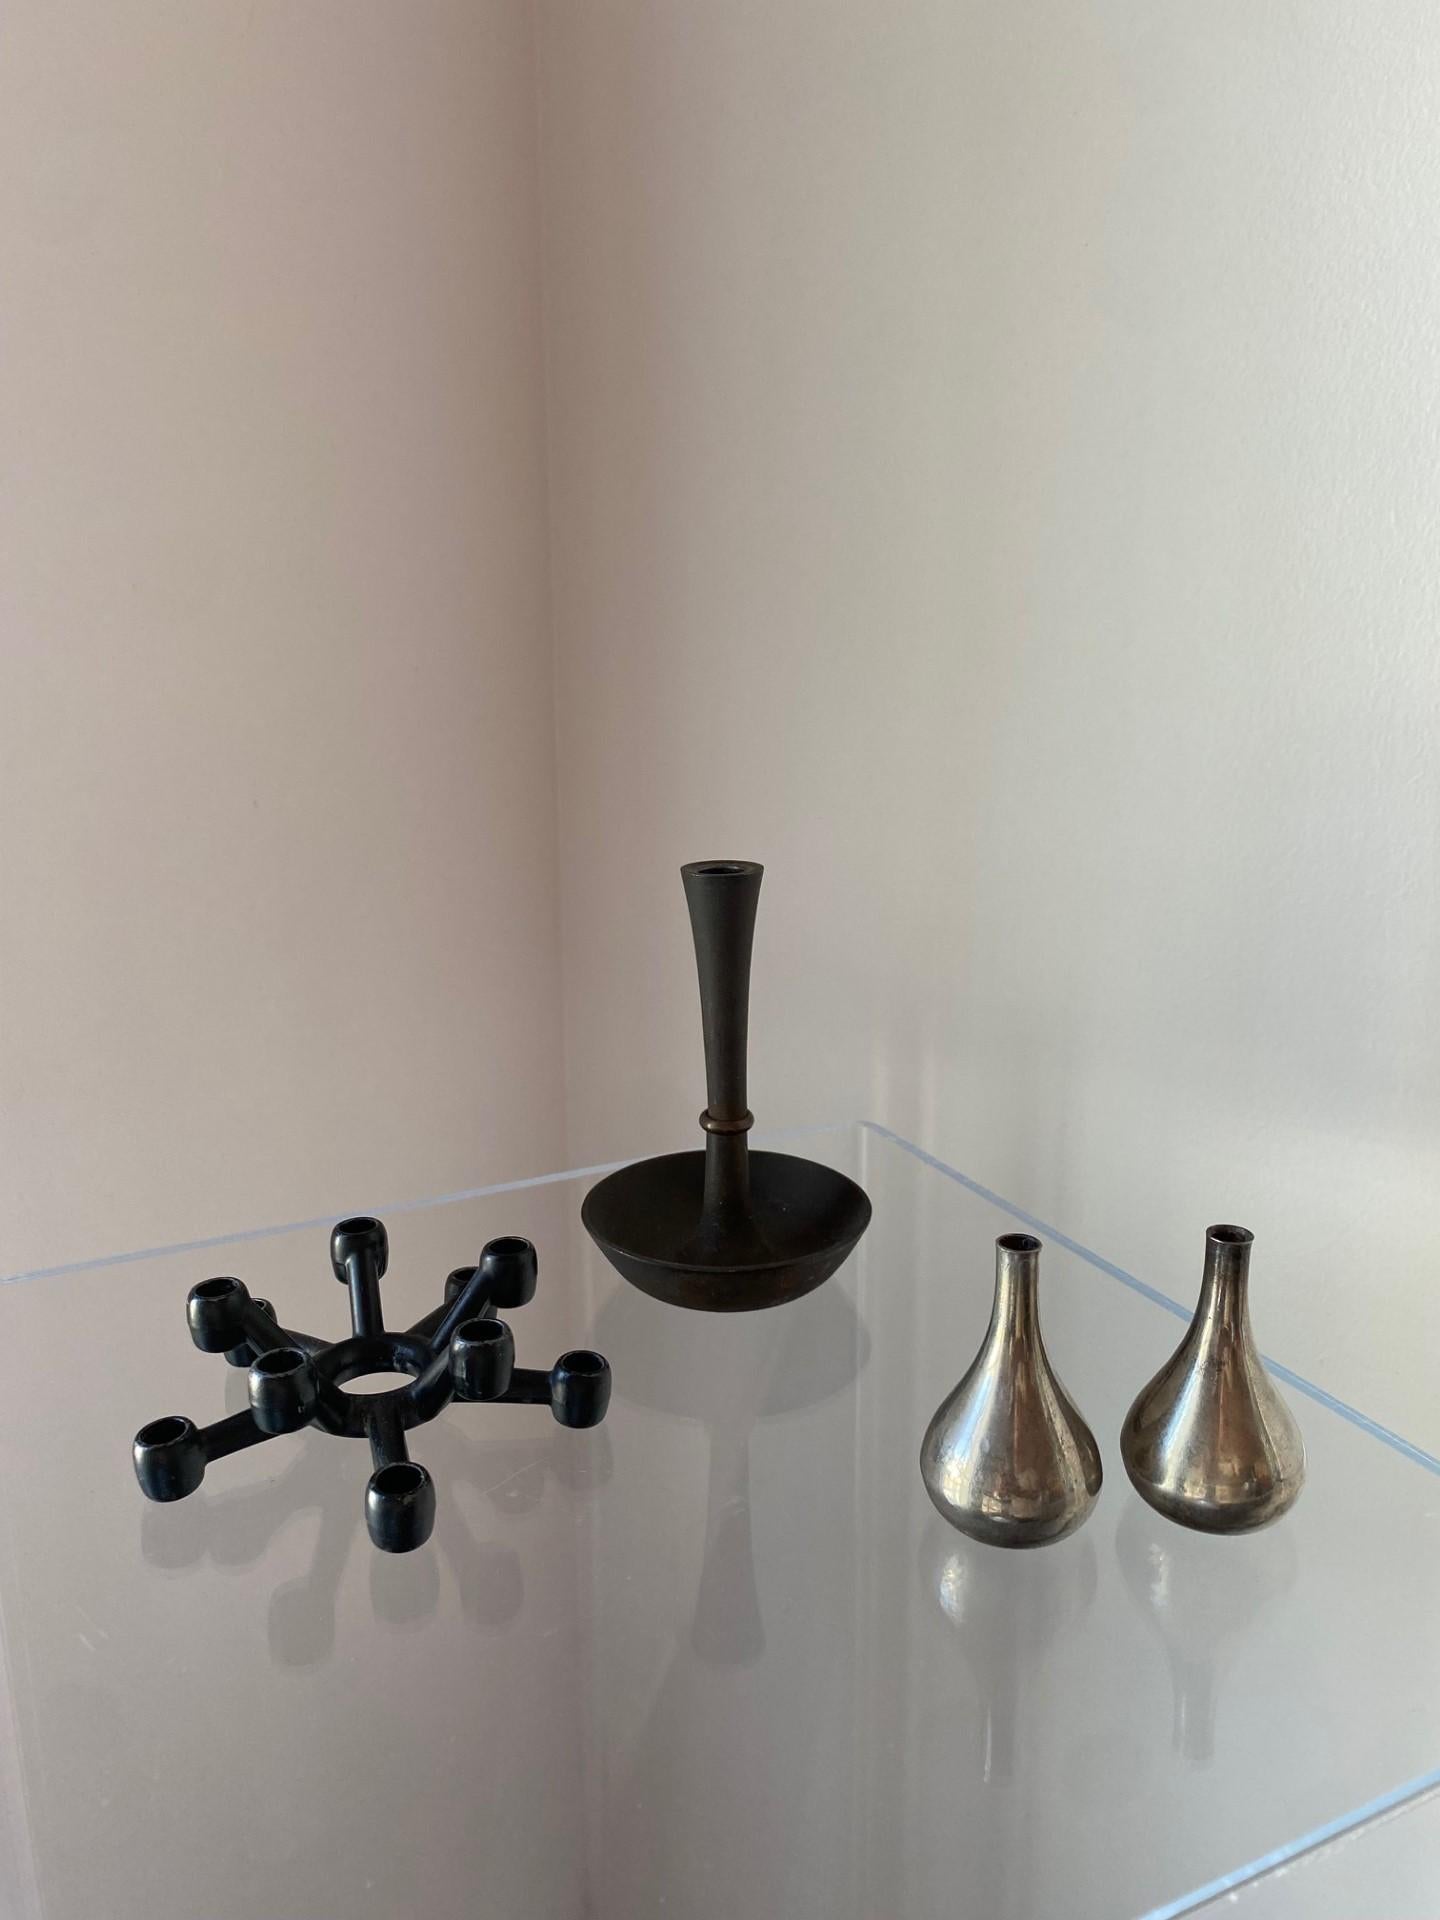 Eine Reihe unglaublicher skandinavischer klassischer Kerzenhalter von Dansk.  Dieses Set enthält einen Spinnenkerzenhalter, einen Kerzenhalter aus Eisen und Messing und zwei tropfenförmige Kerzenhalter (insgesamt 4 Stück). Unglaubliche Entwürfe von